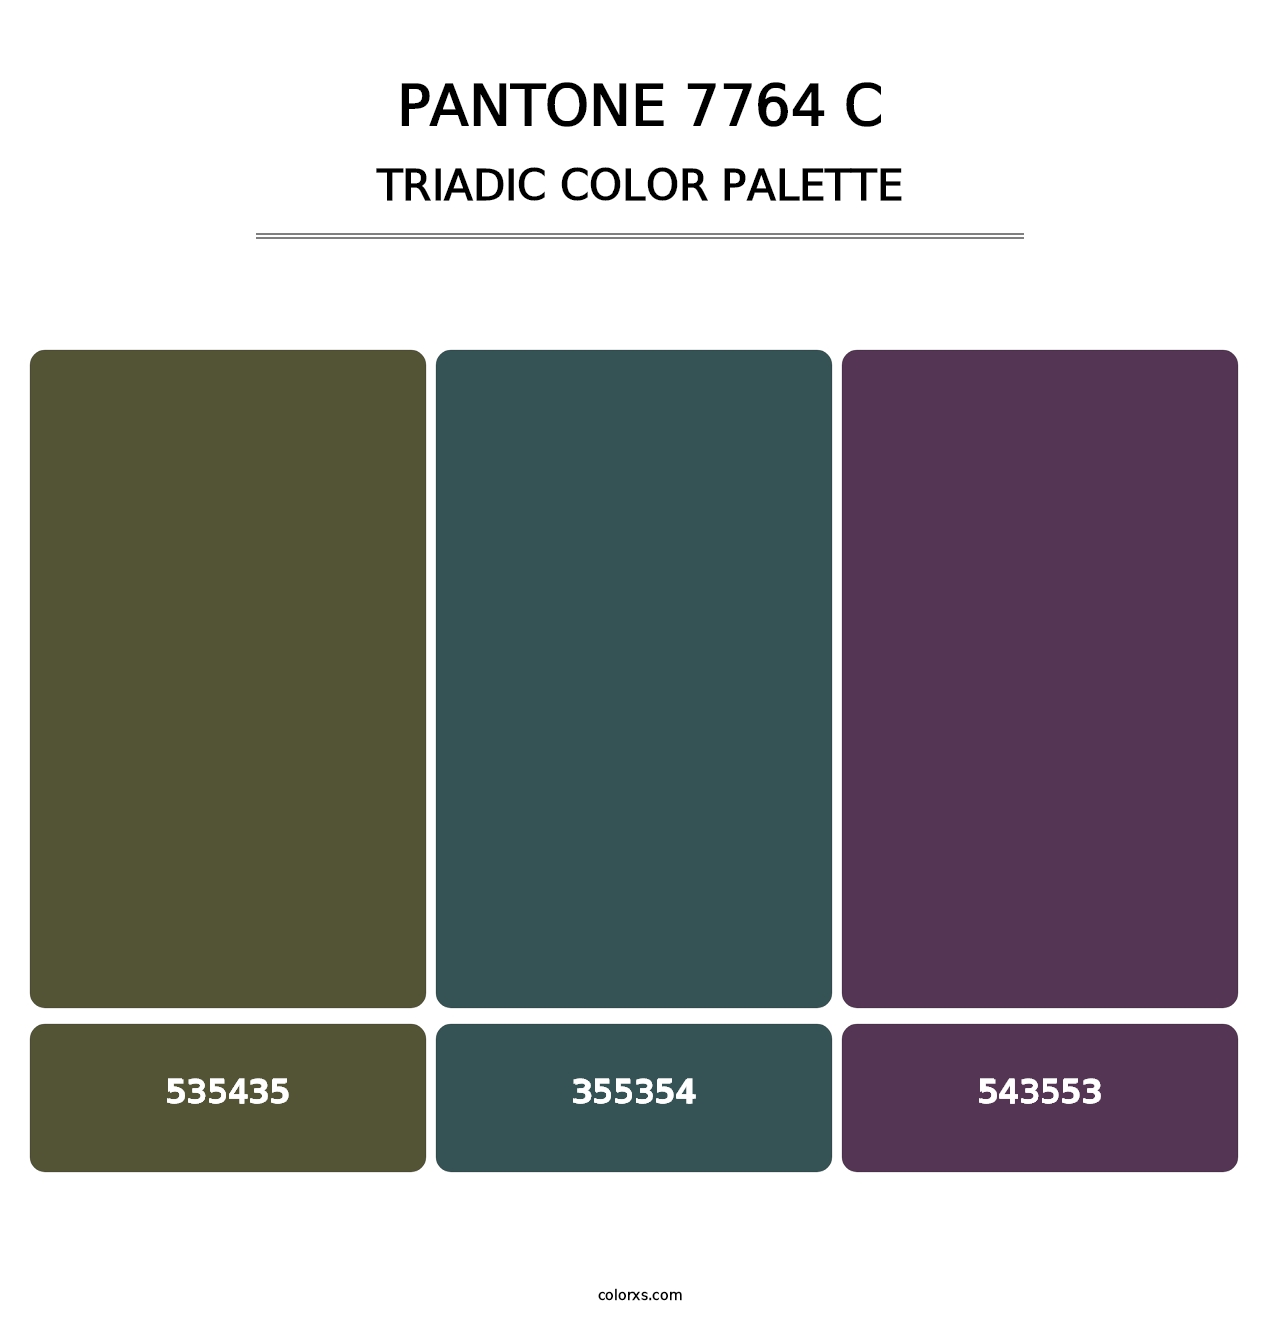 PANTONE 7764 C - Triadic Color Palette